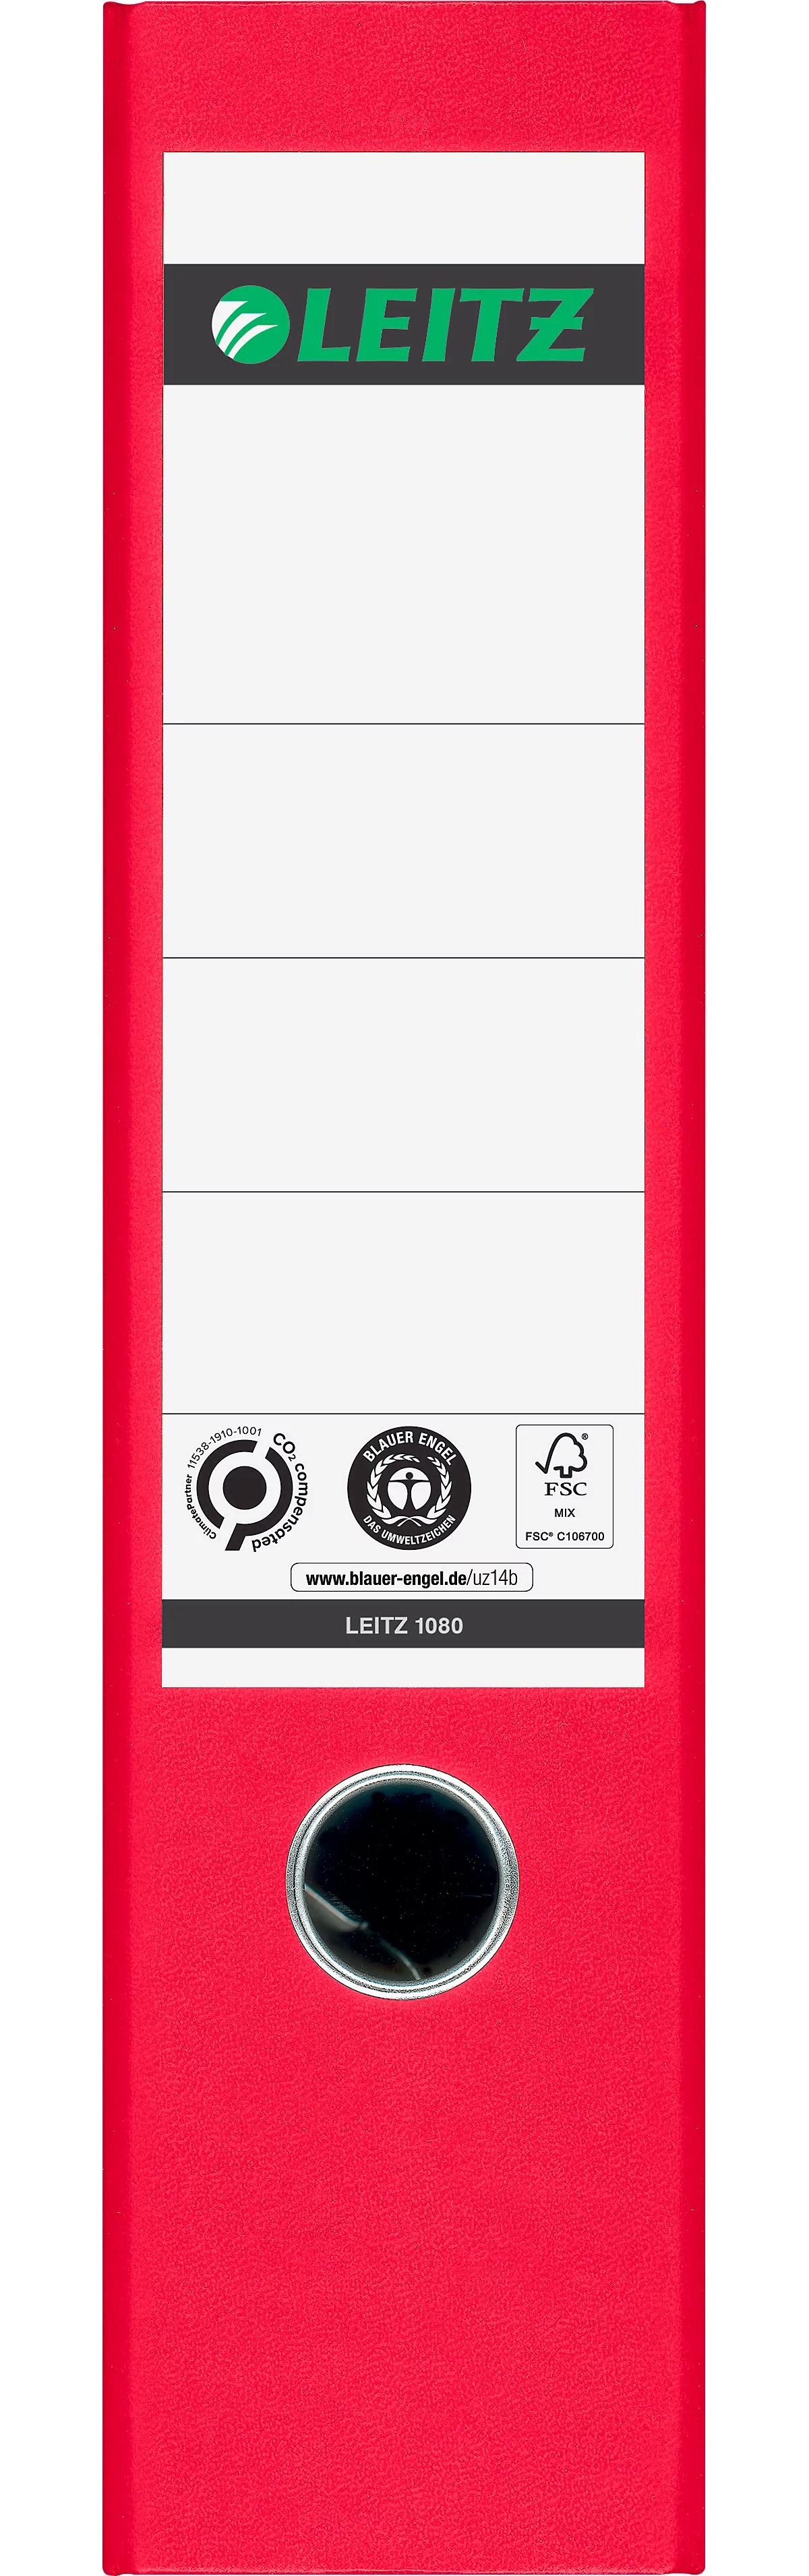 Ordner LEITZ® 1080, DIN A4, Rückenbreite 80 mm, Griffloch, geklebtes Rückenschild, klimaneutral, Hartpappe, 1 Stück, rot